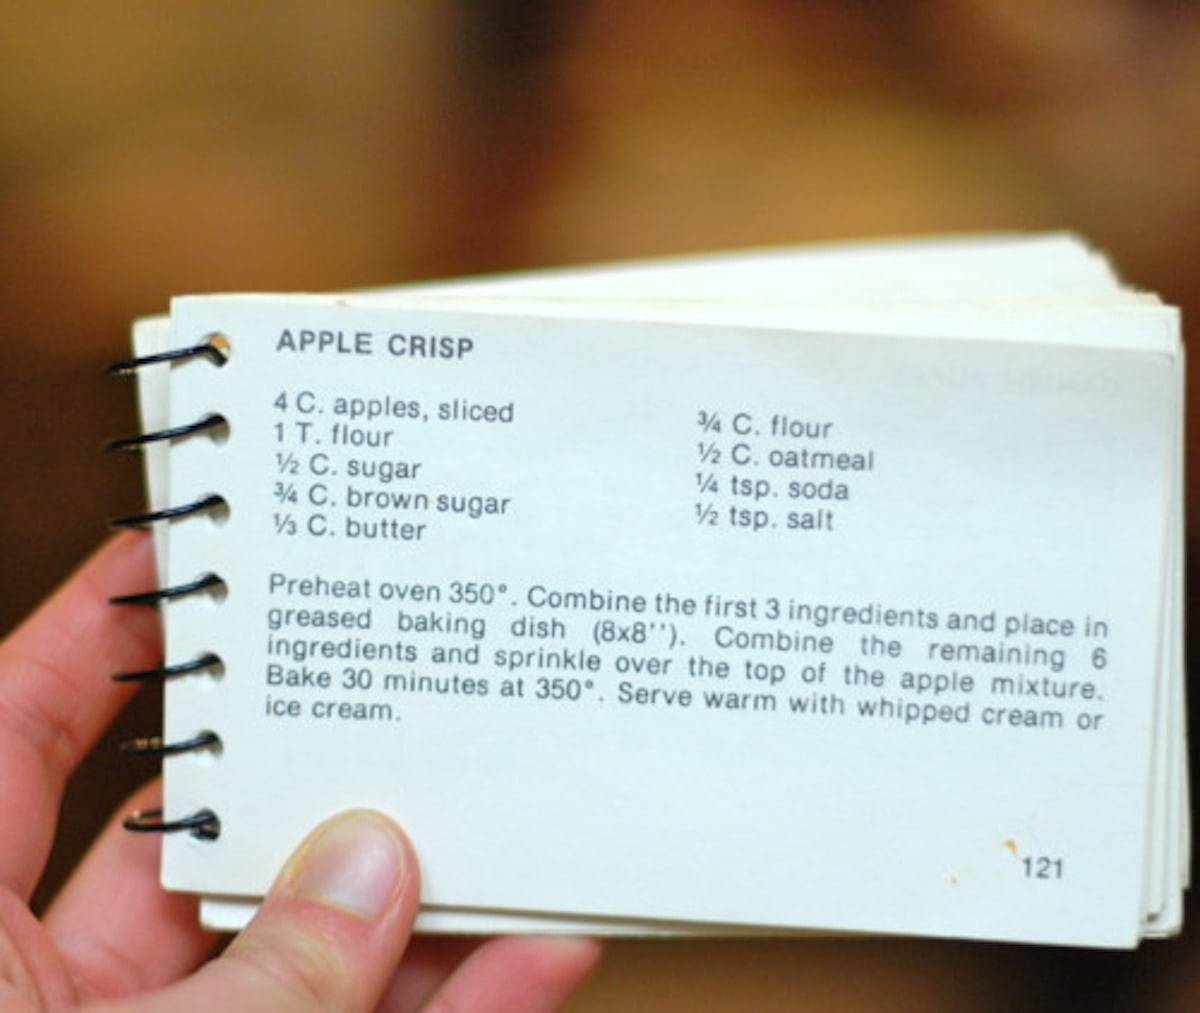 Apple crisp recipe on a recipe card.